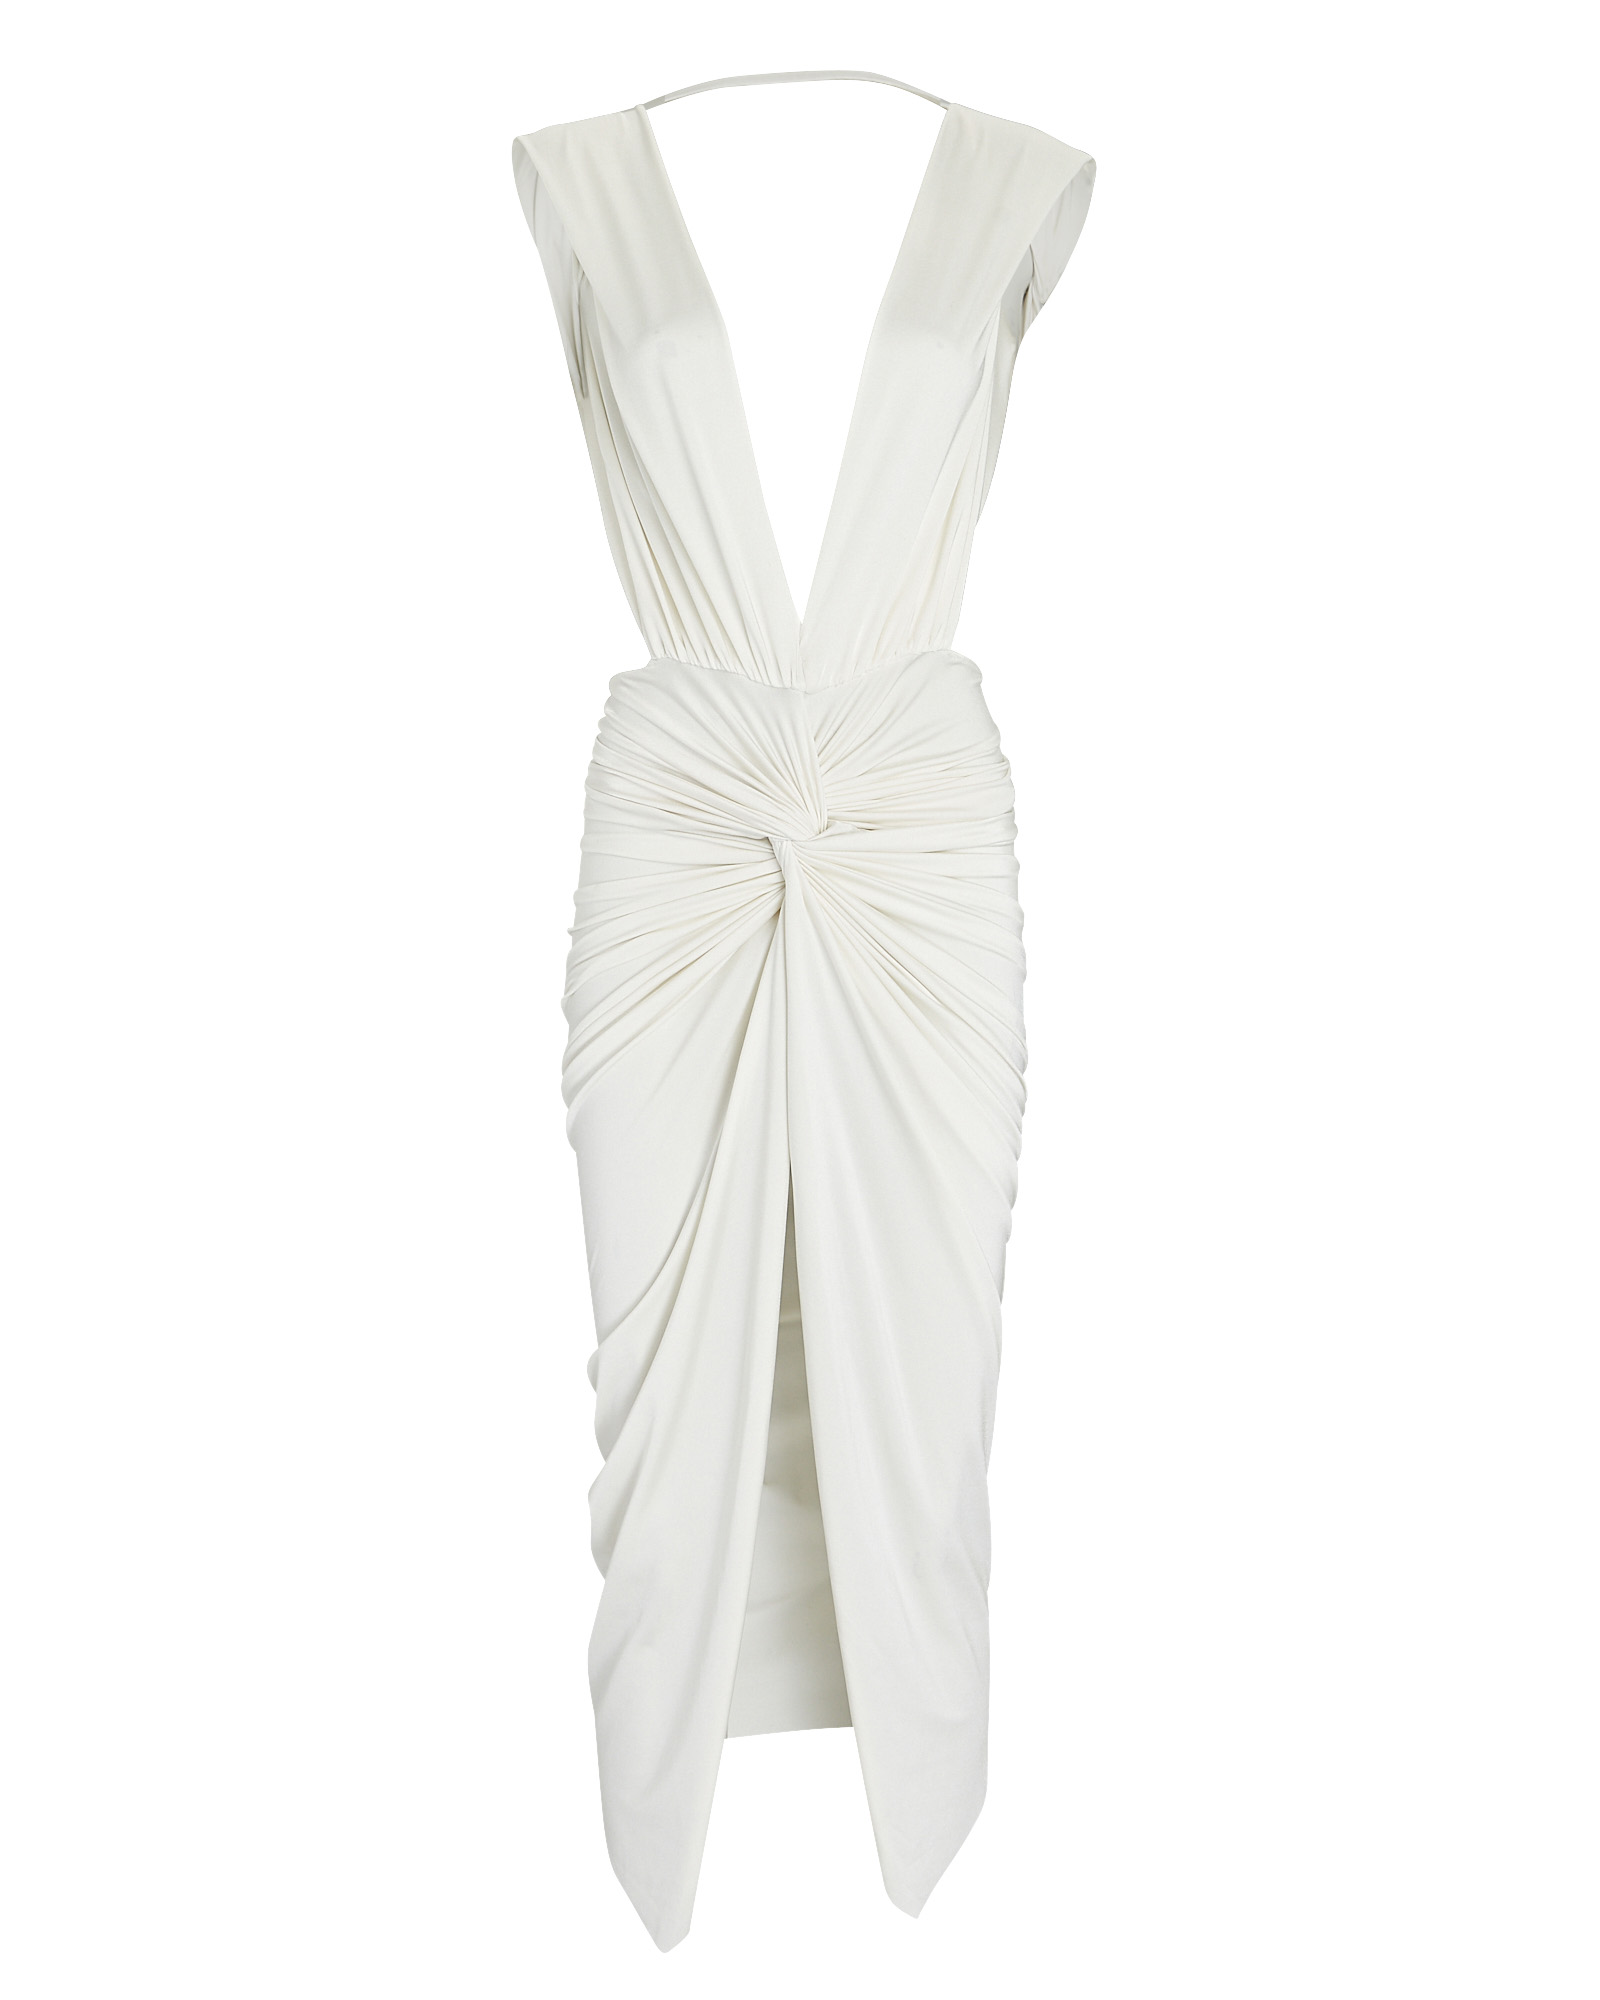 Baobab Mia Open-Back Midi Dress in White | INTERMIX®